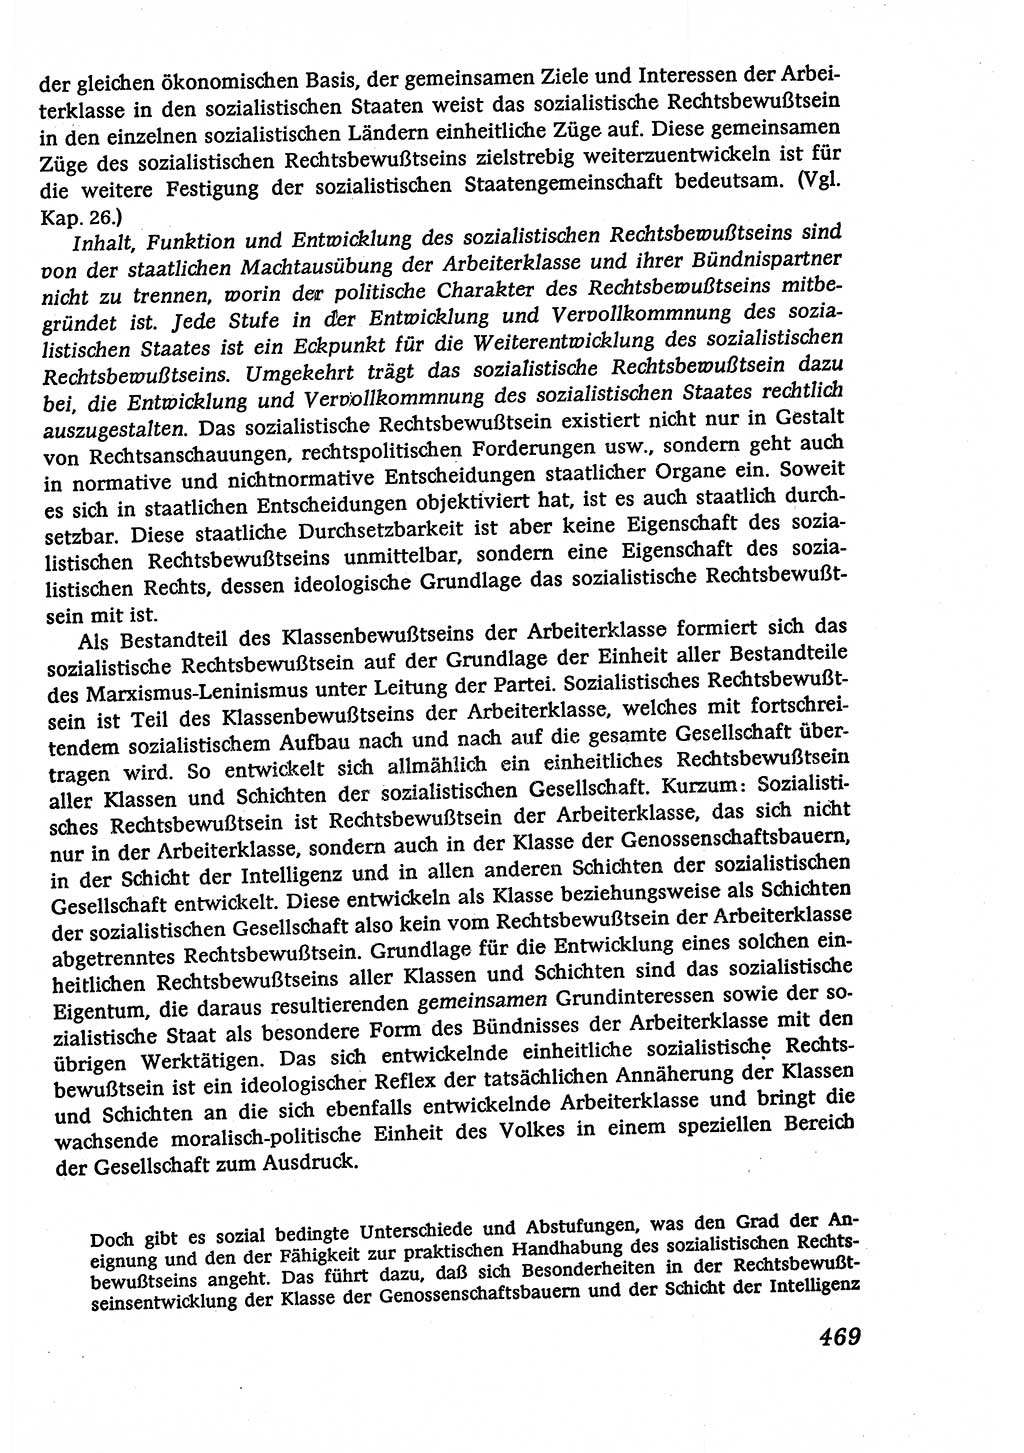 Marxistisch-leninistische (ML) Staats- und Rechtstheorie [Deutsche Demokratische Republik (DDR)], Lehrbuch 1980, Seite 469 (ML St.-R.-Th. DDR Lb. 1980, S. 469)